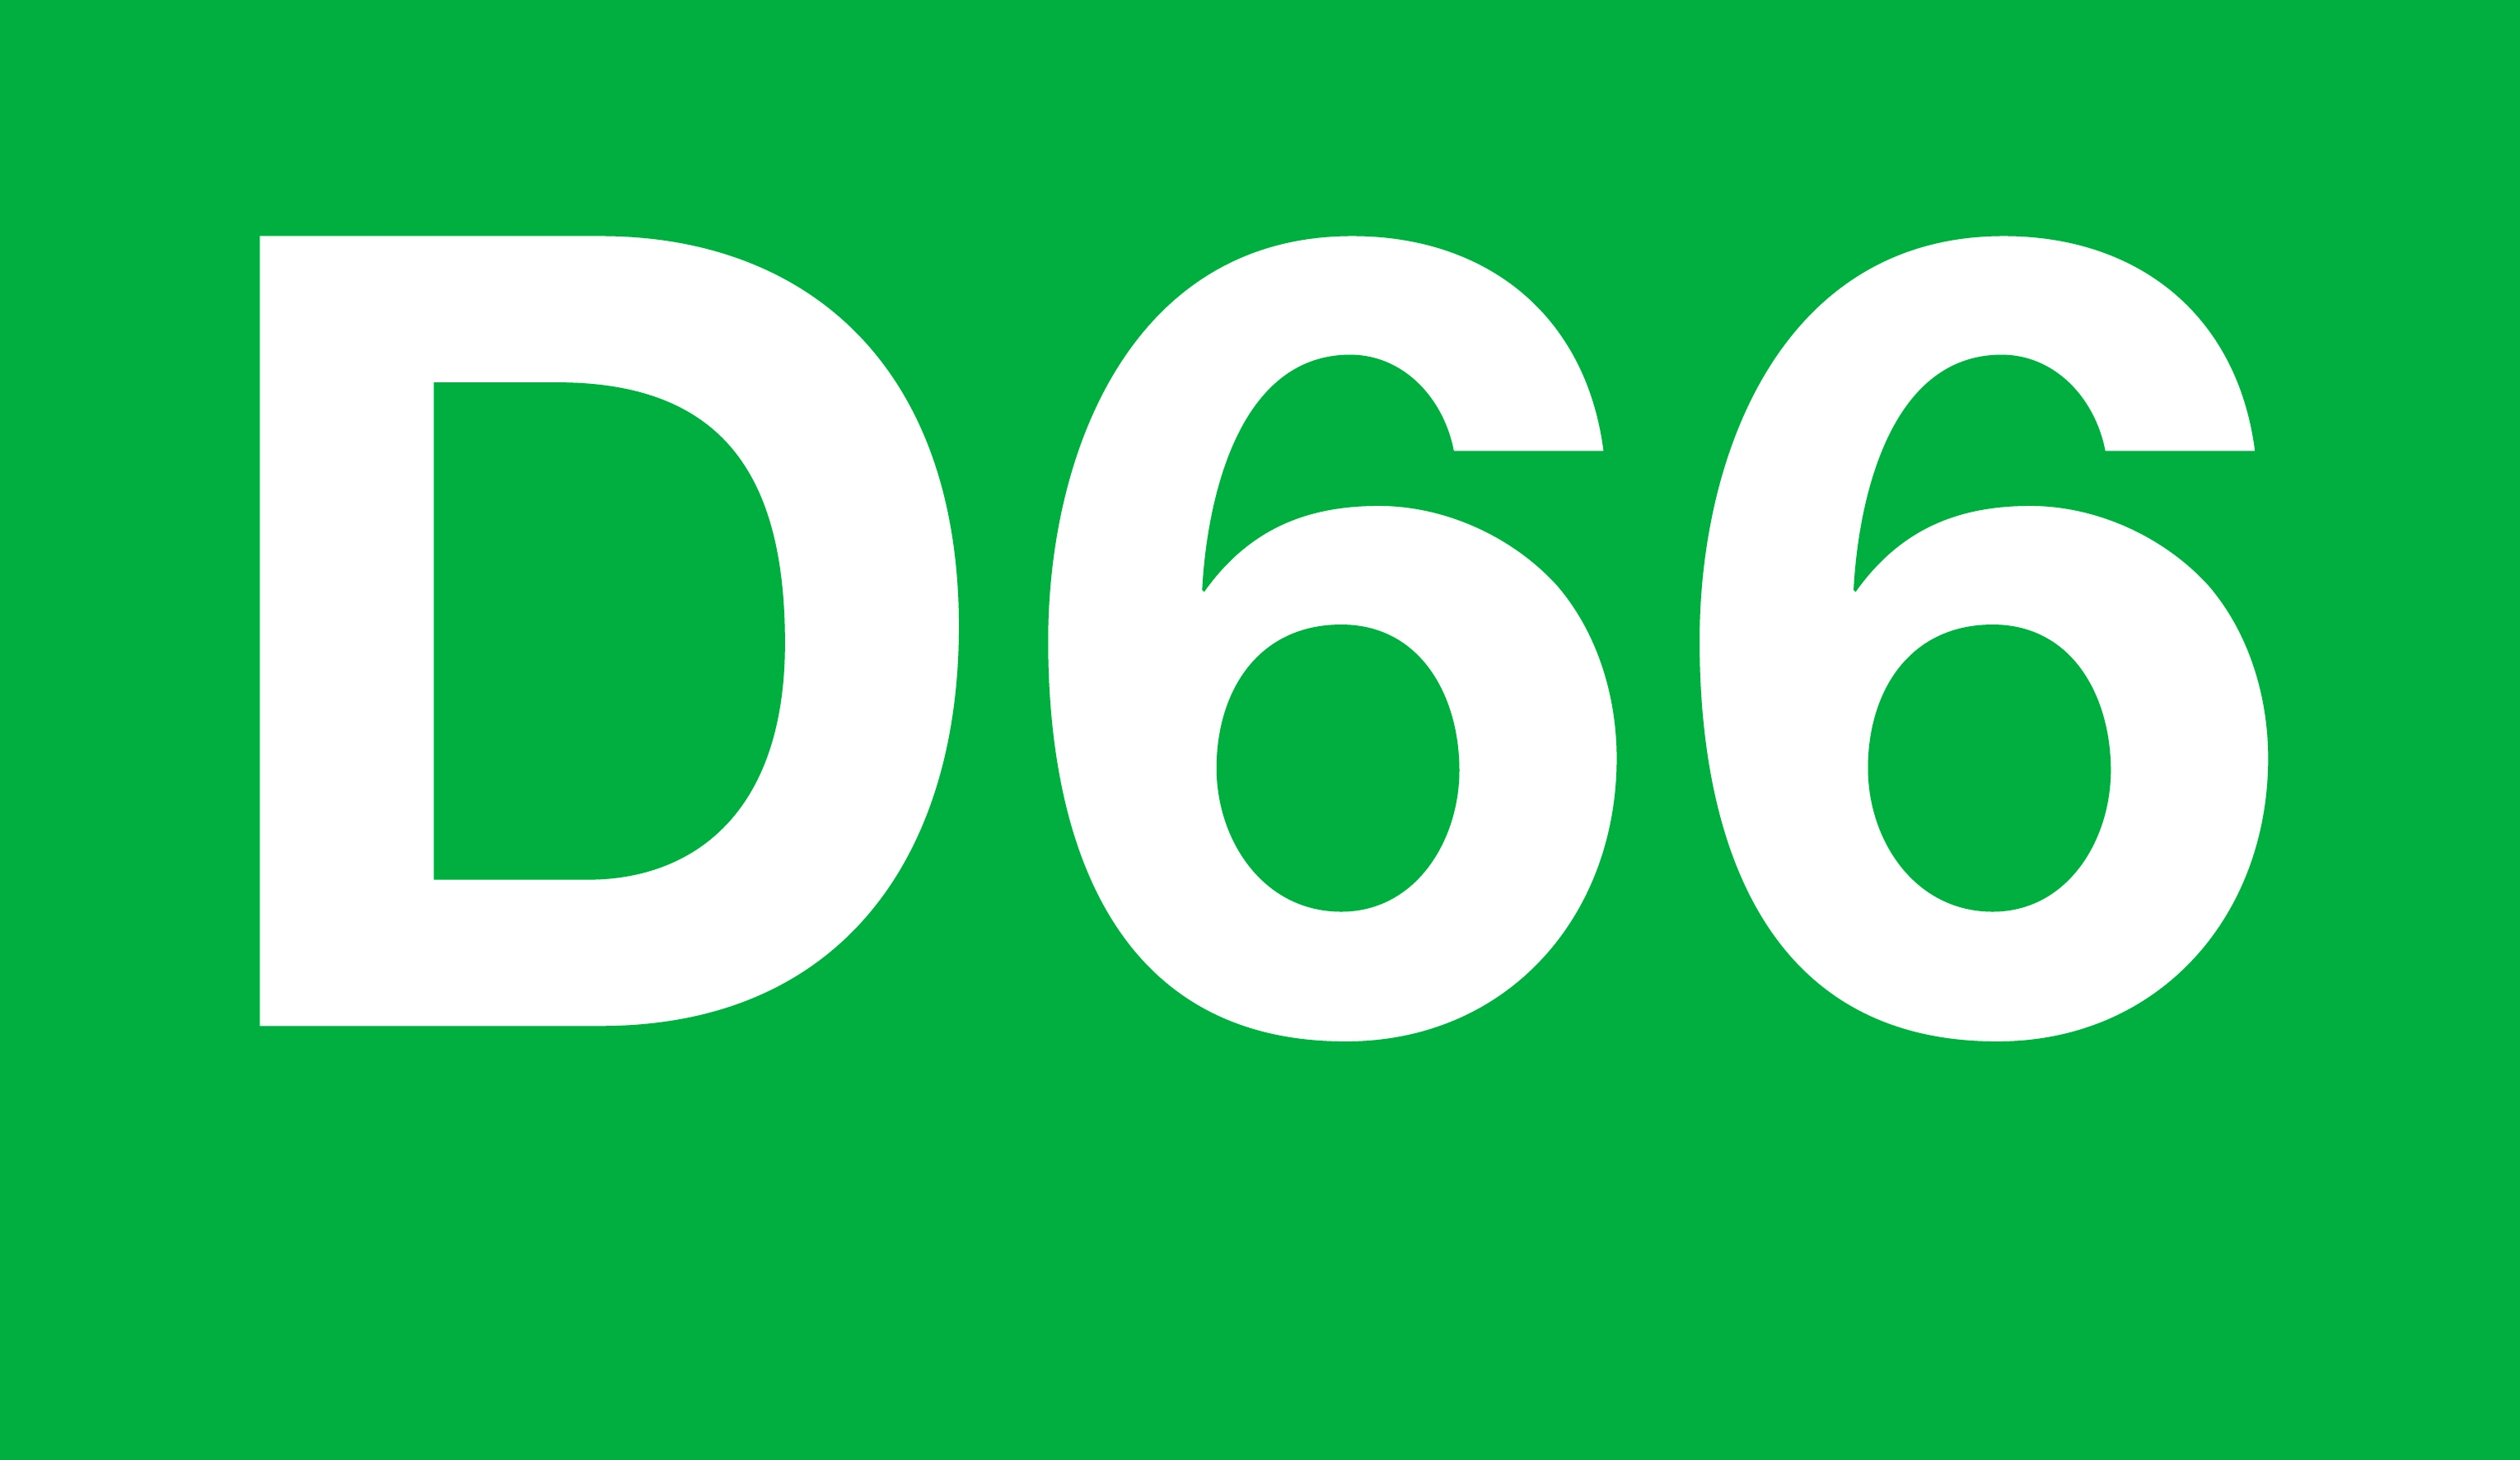 logo-d66